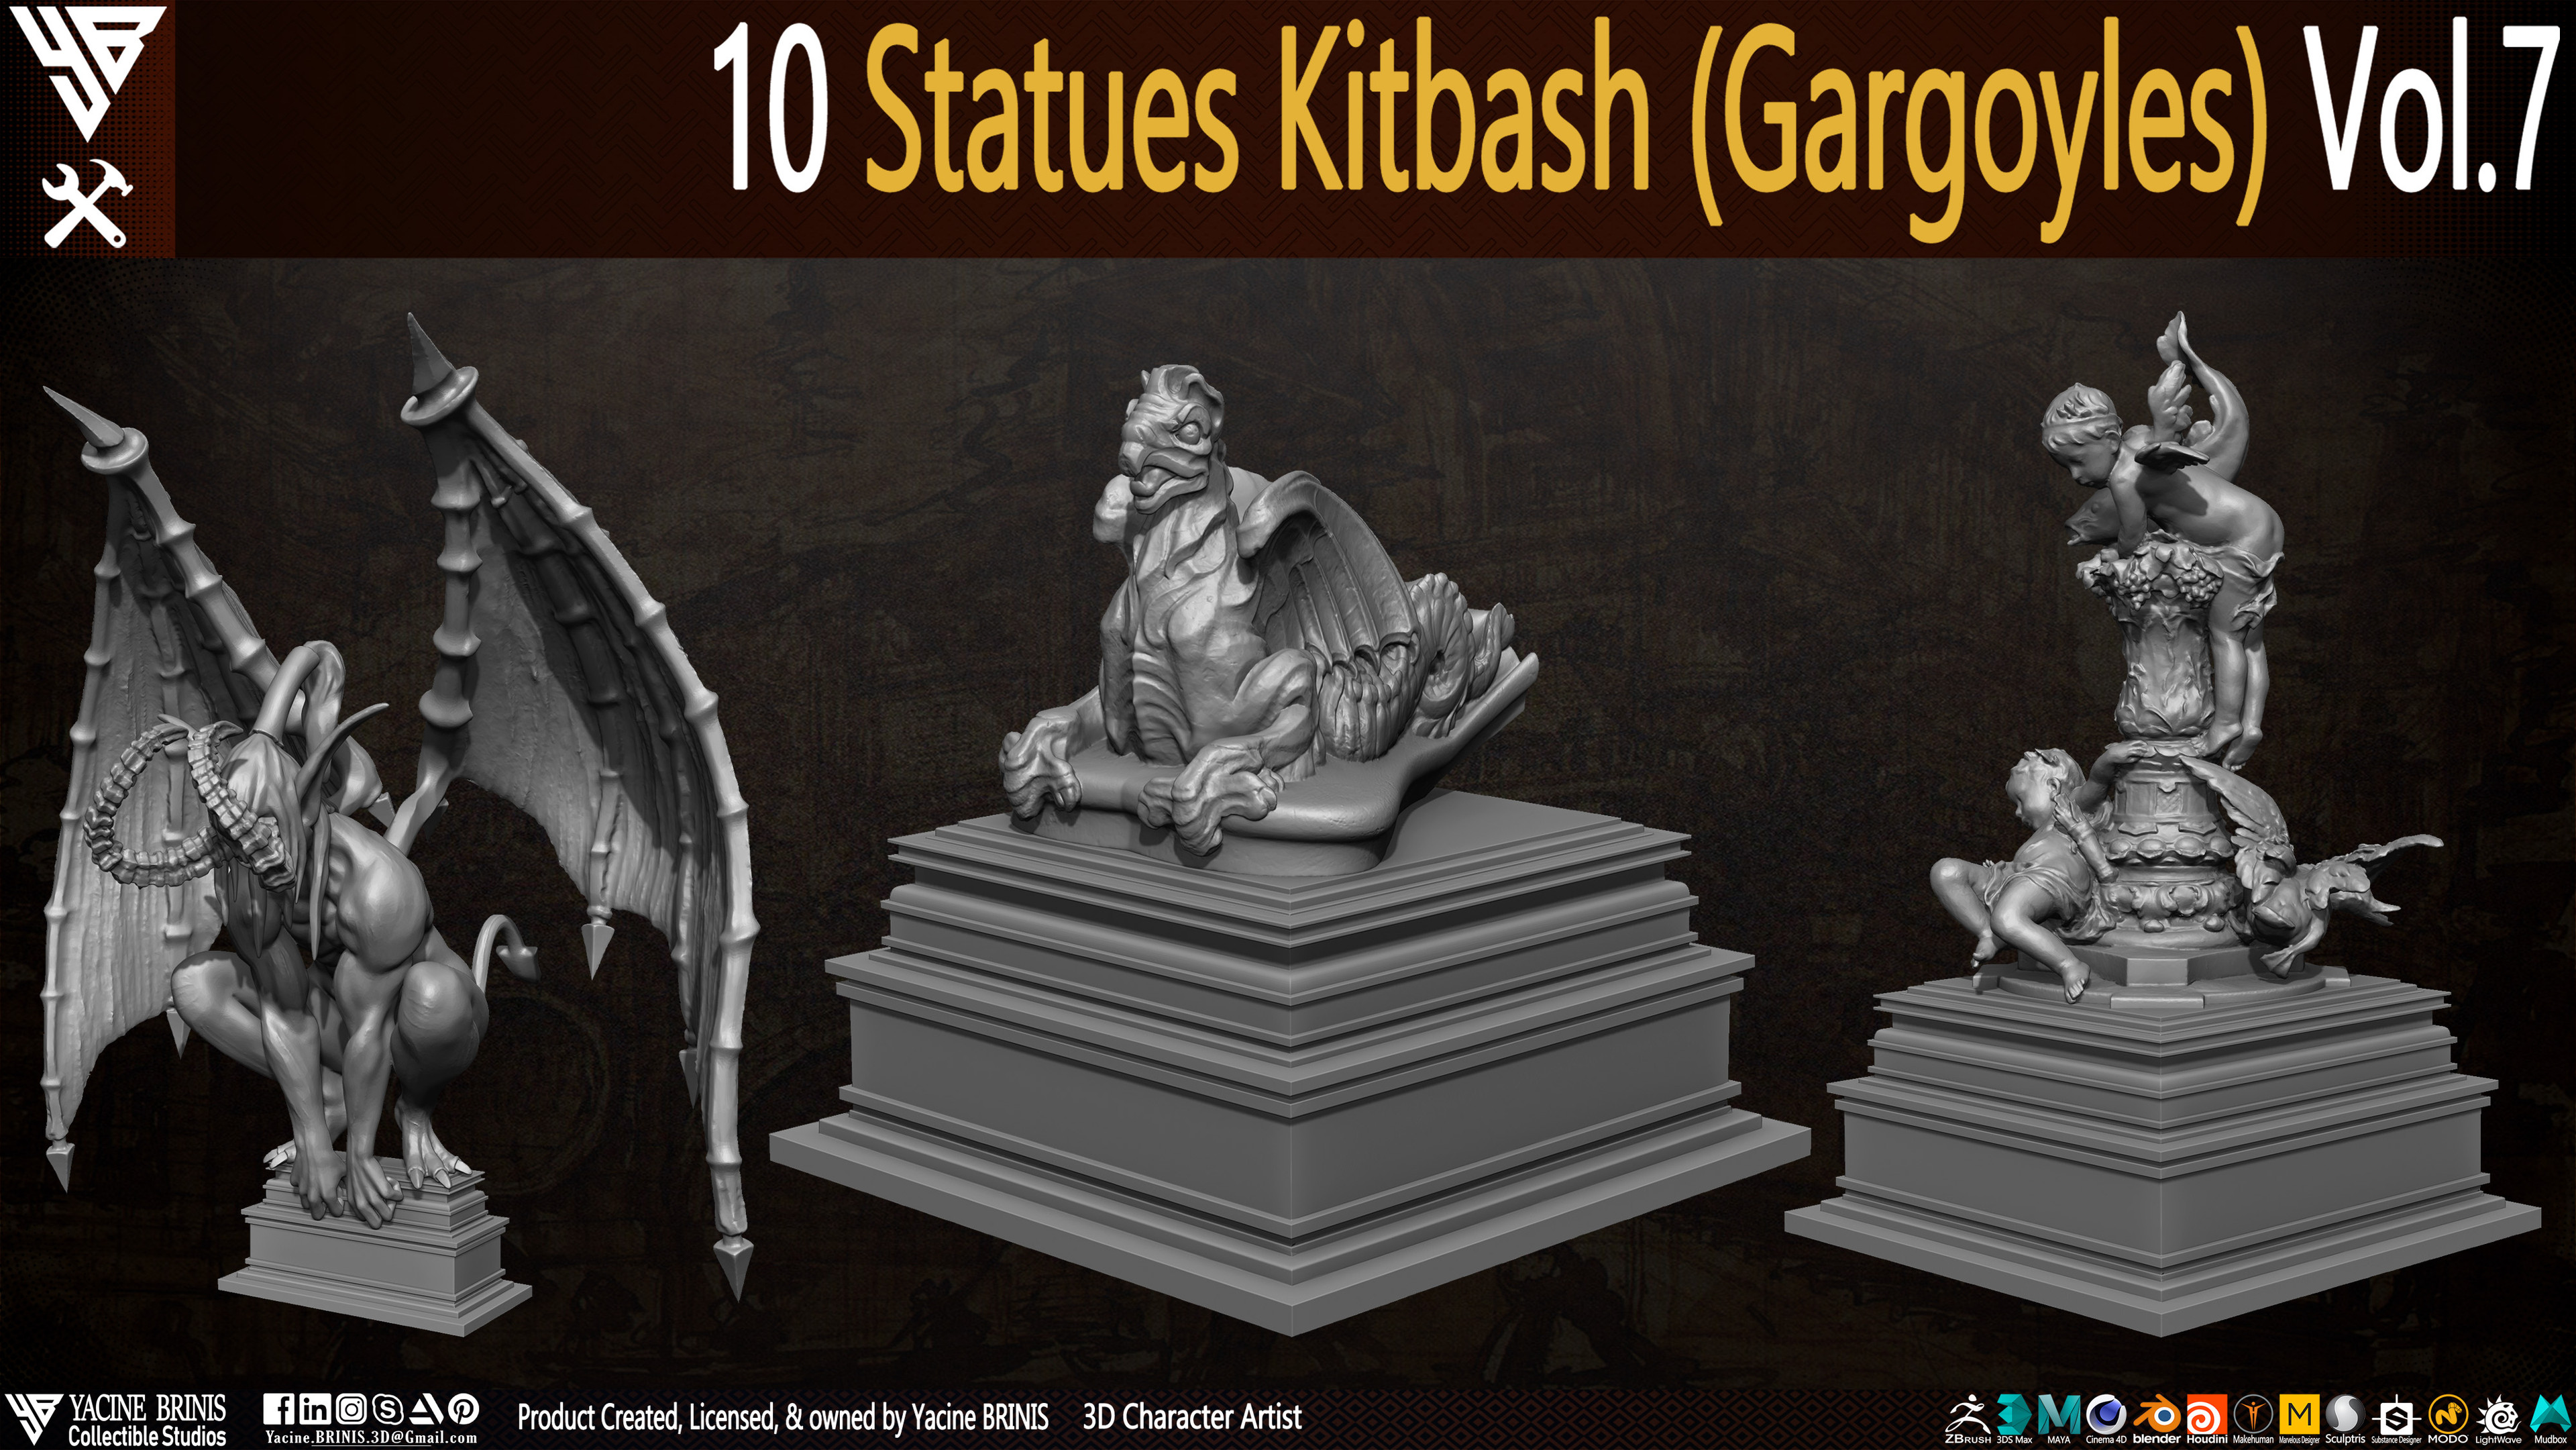 Statues Kitbash by yacine brinis Set 45